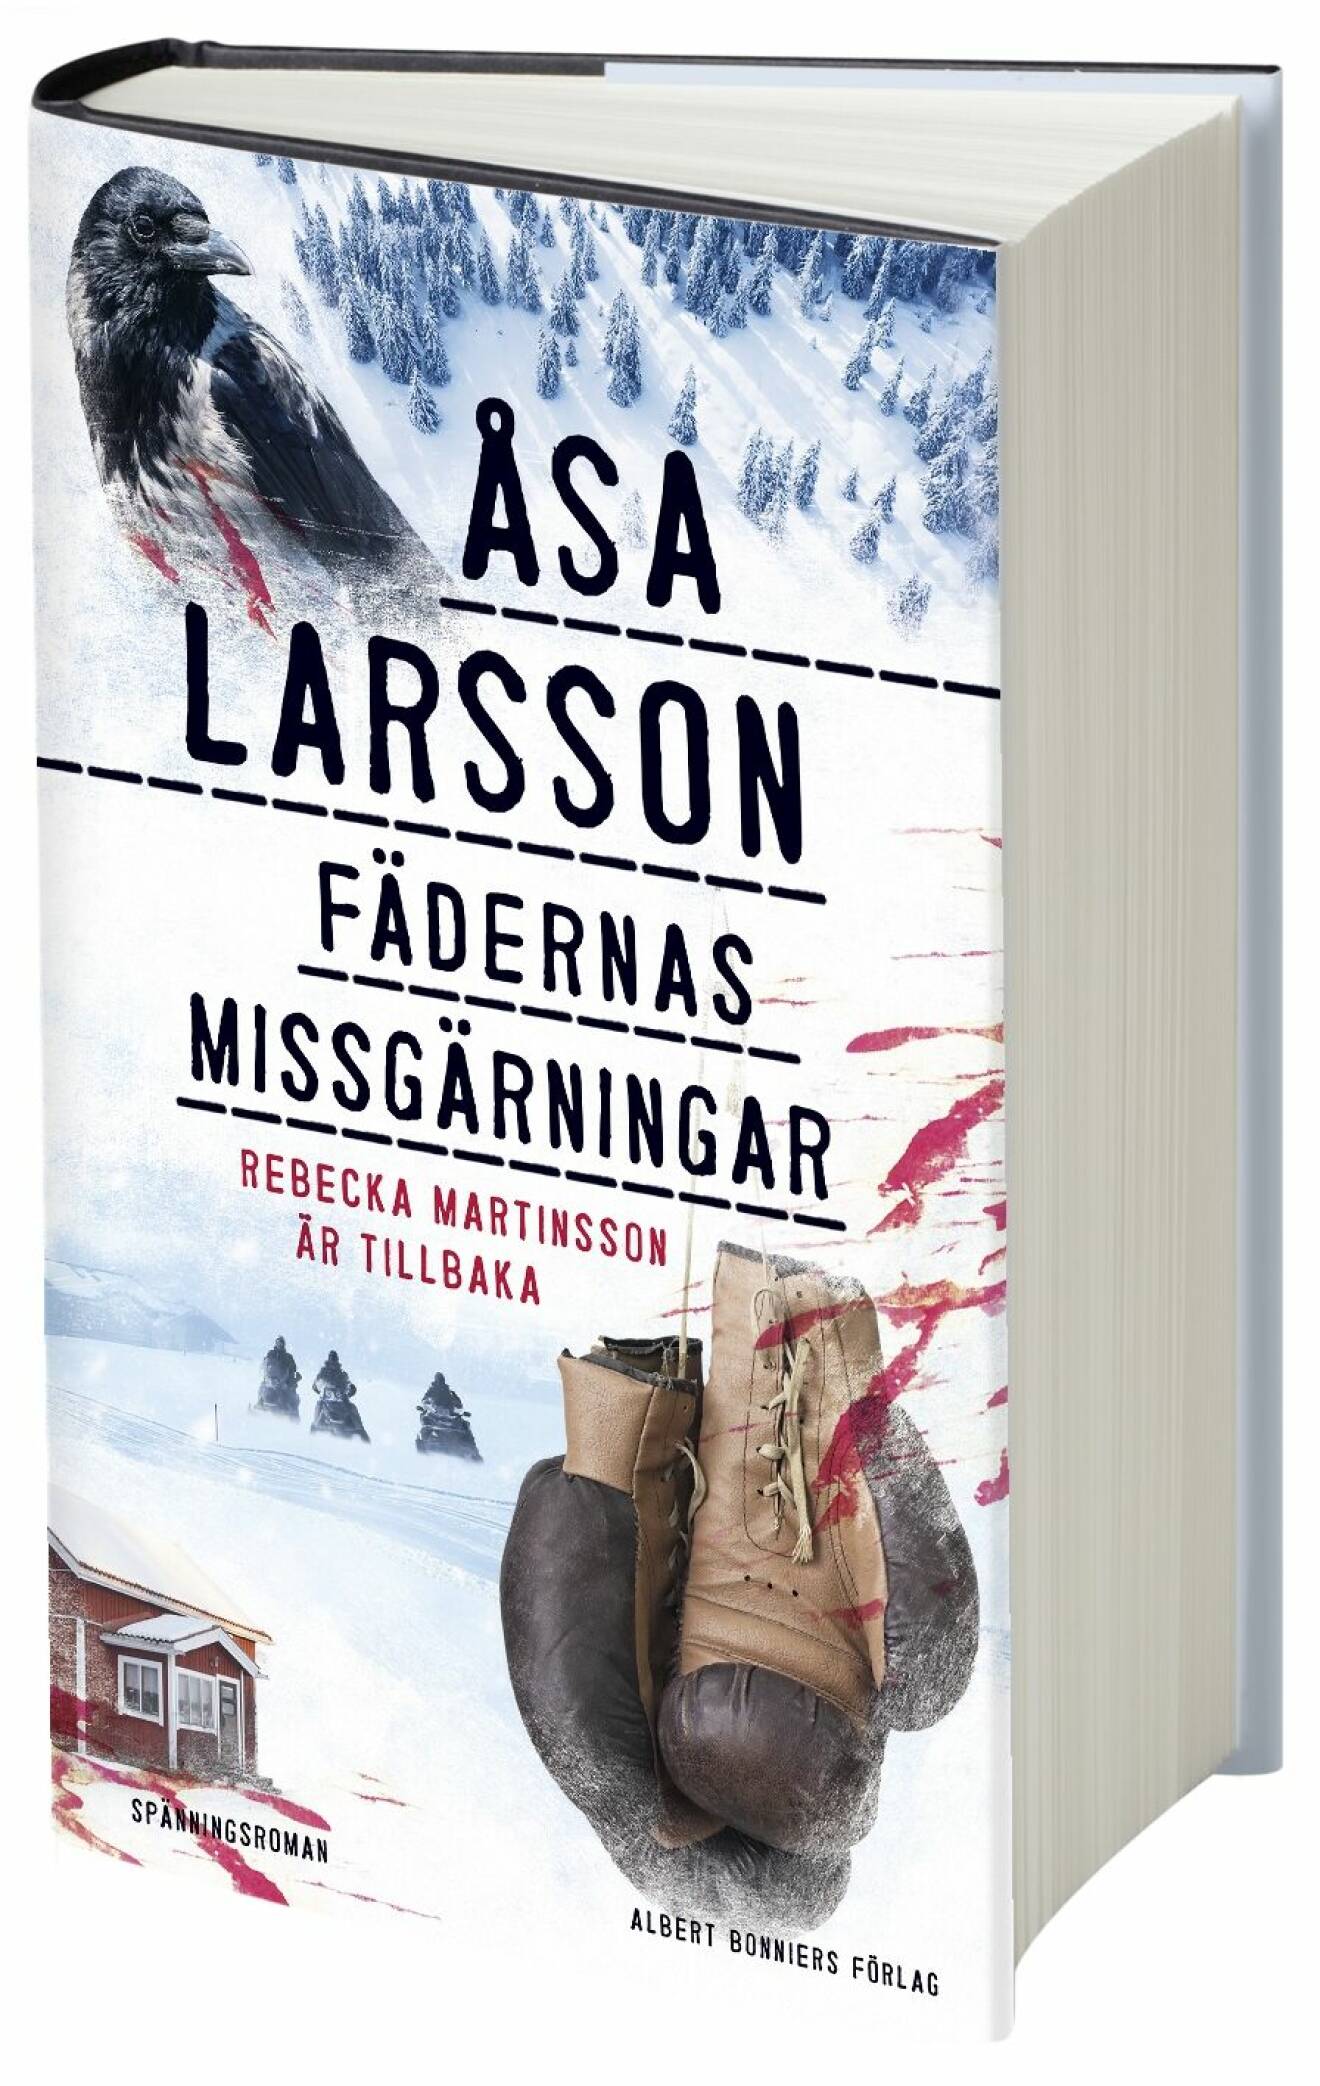 Fädernas missgärningar, Åsa Larsson (AB Förlag)